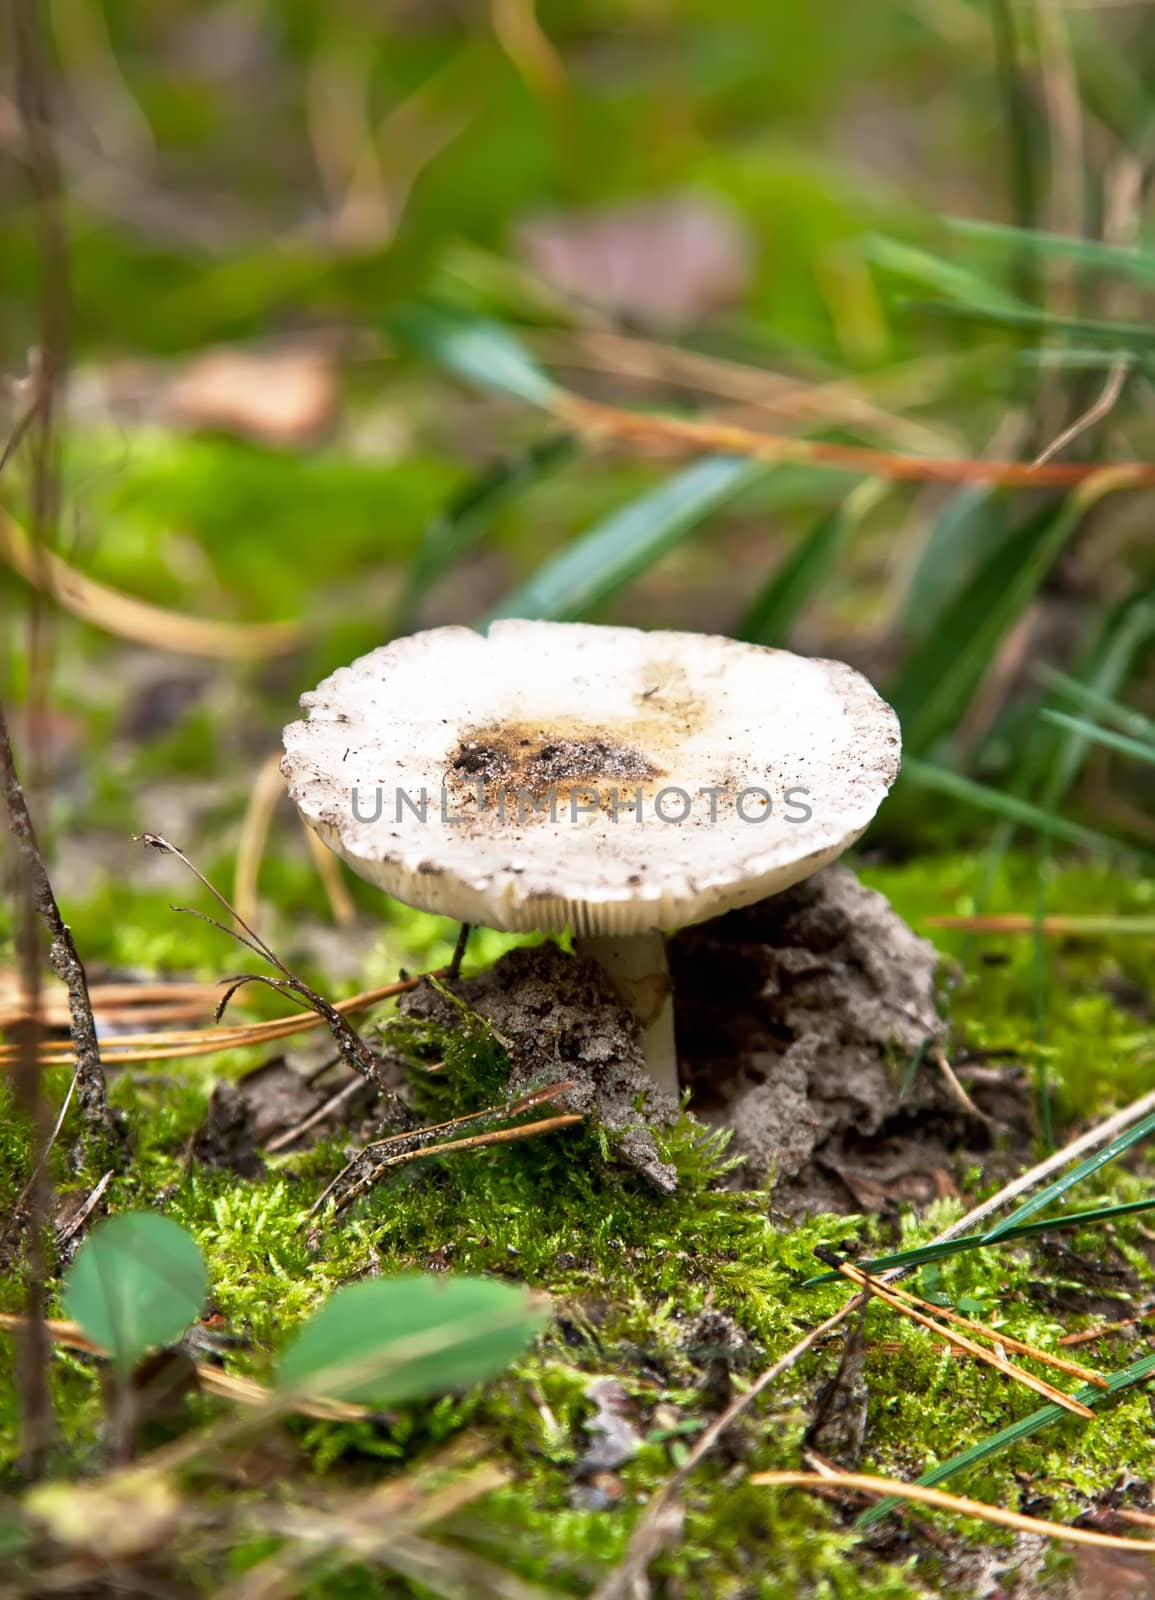 Russule mushroom by RawGroup